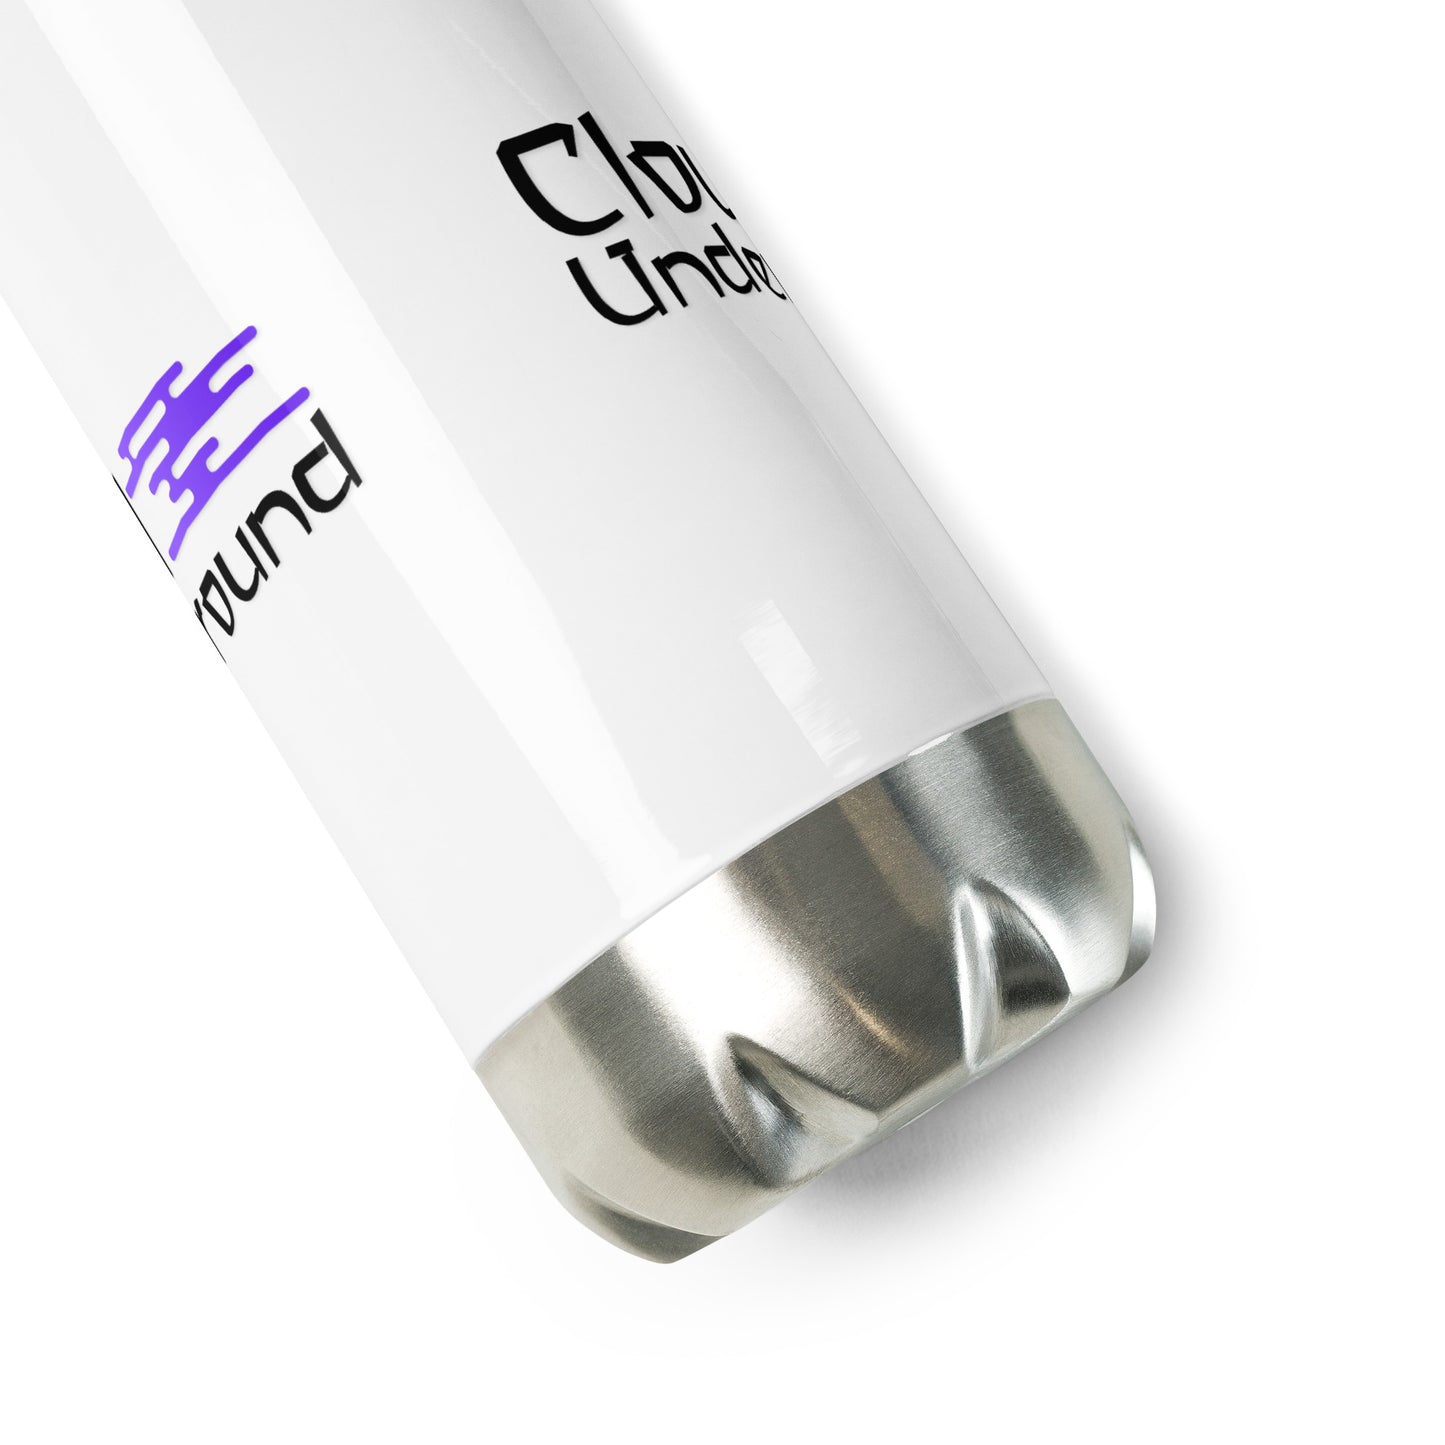 Cloud Underground stainless steel water bottle